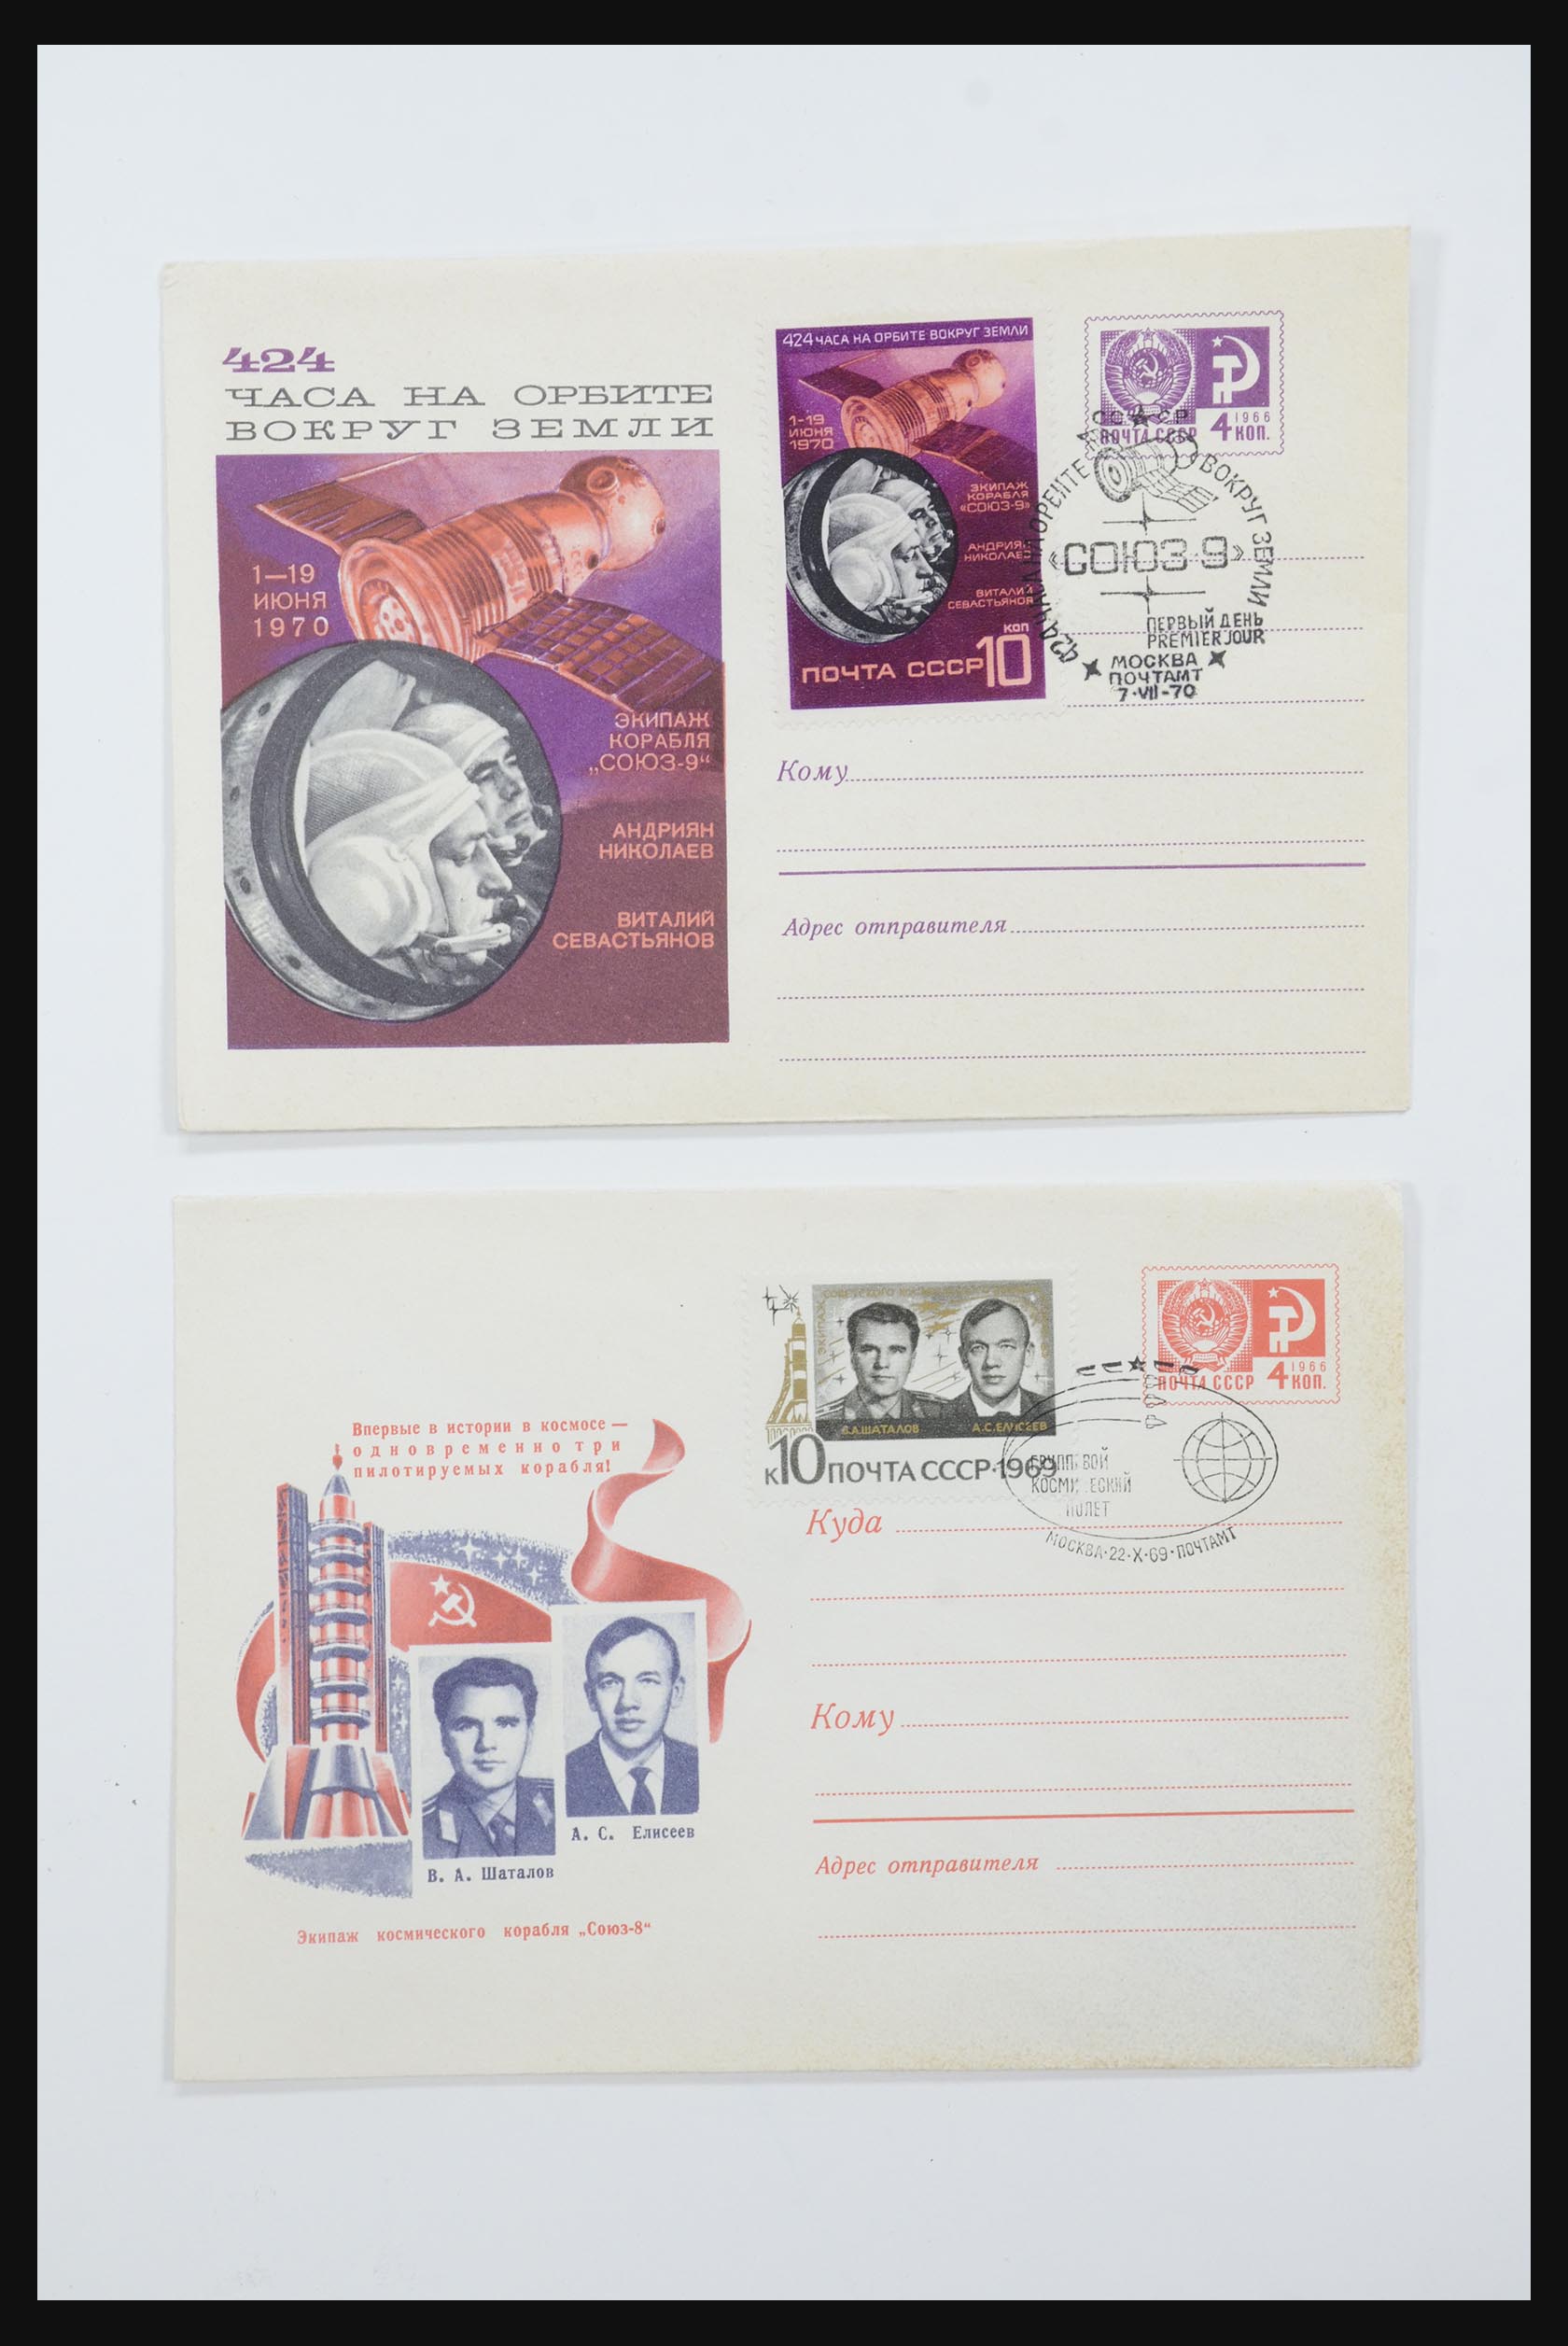 31605 0047 - 31605 Rusland postwaardestukken jaren 50-60.